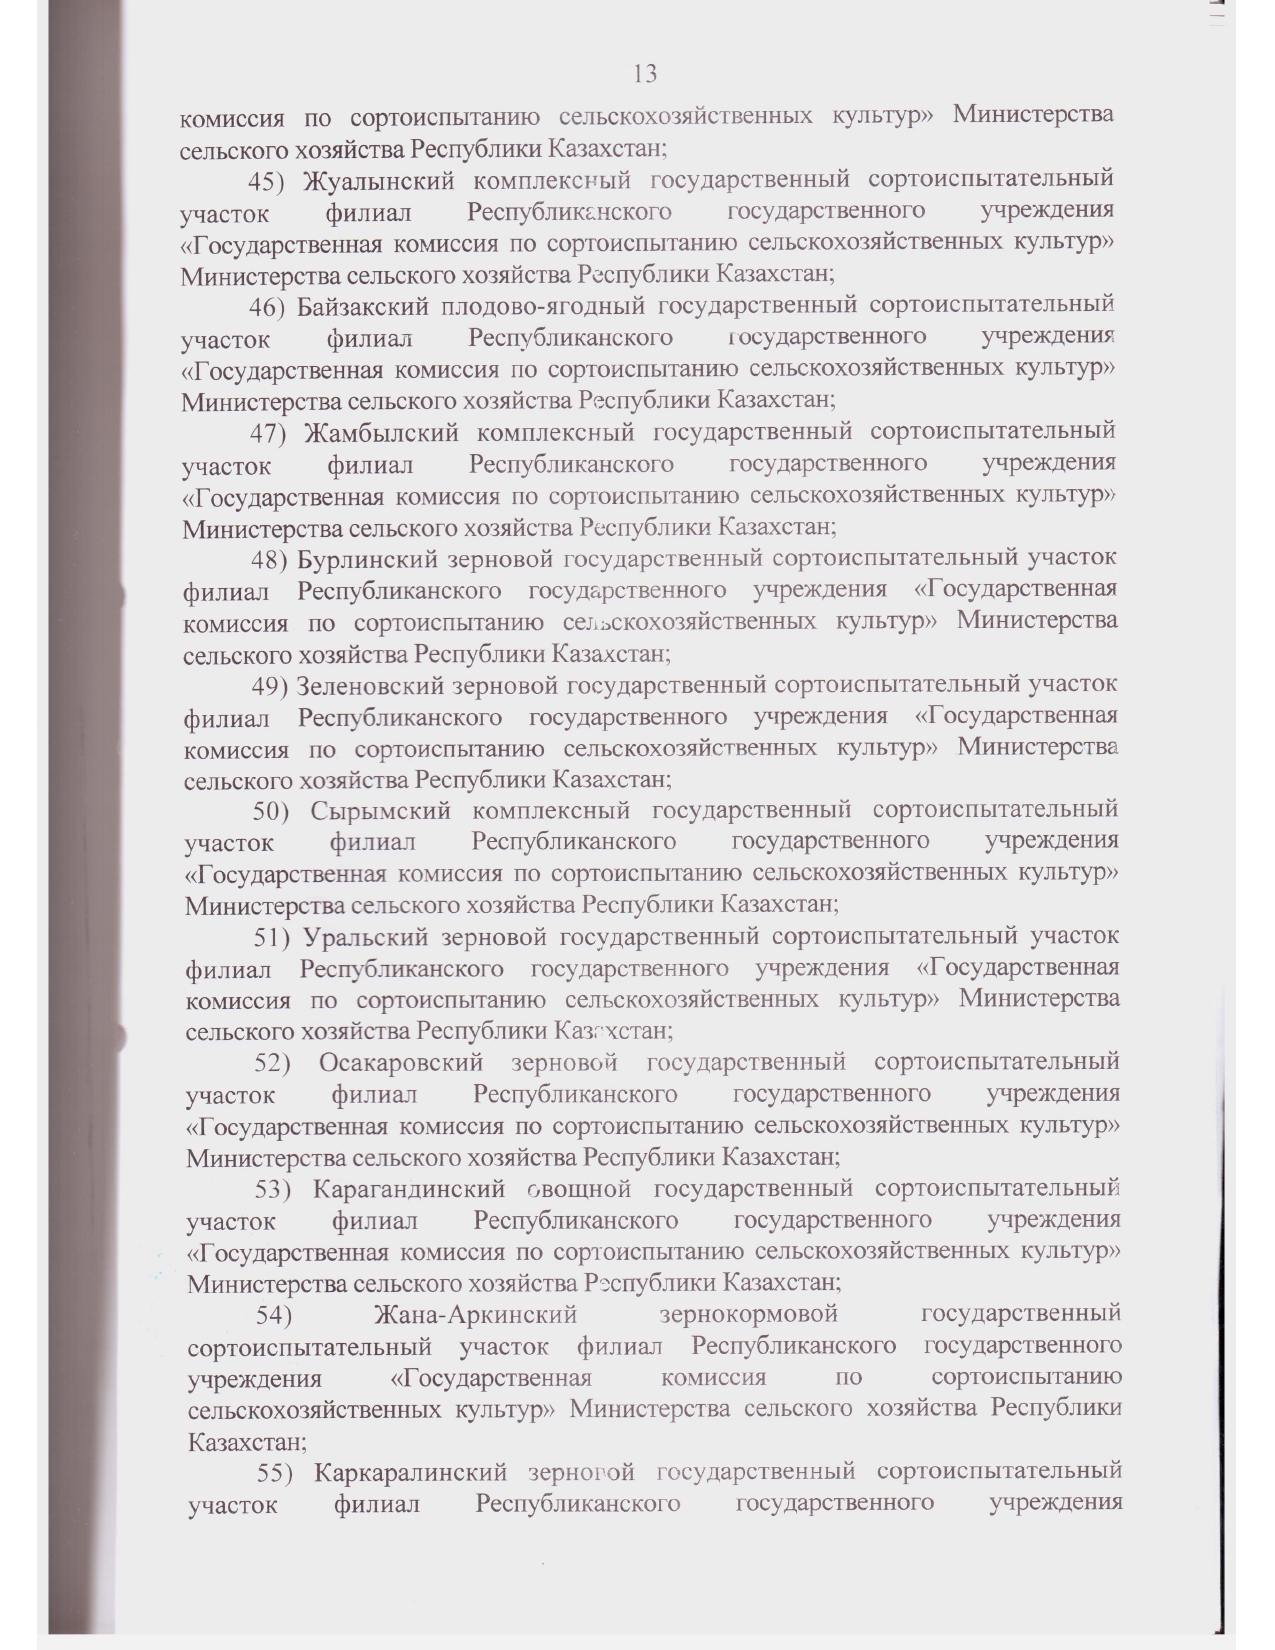 Устав ГосКомиссии_2021 год зарегистрирован_page-0027